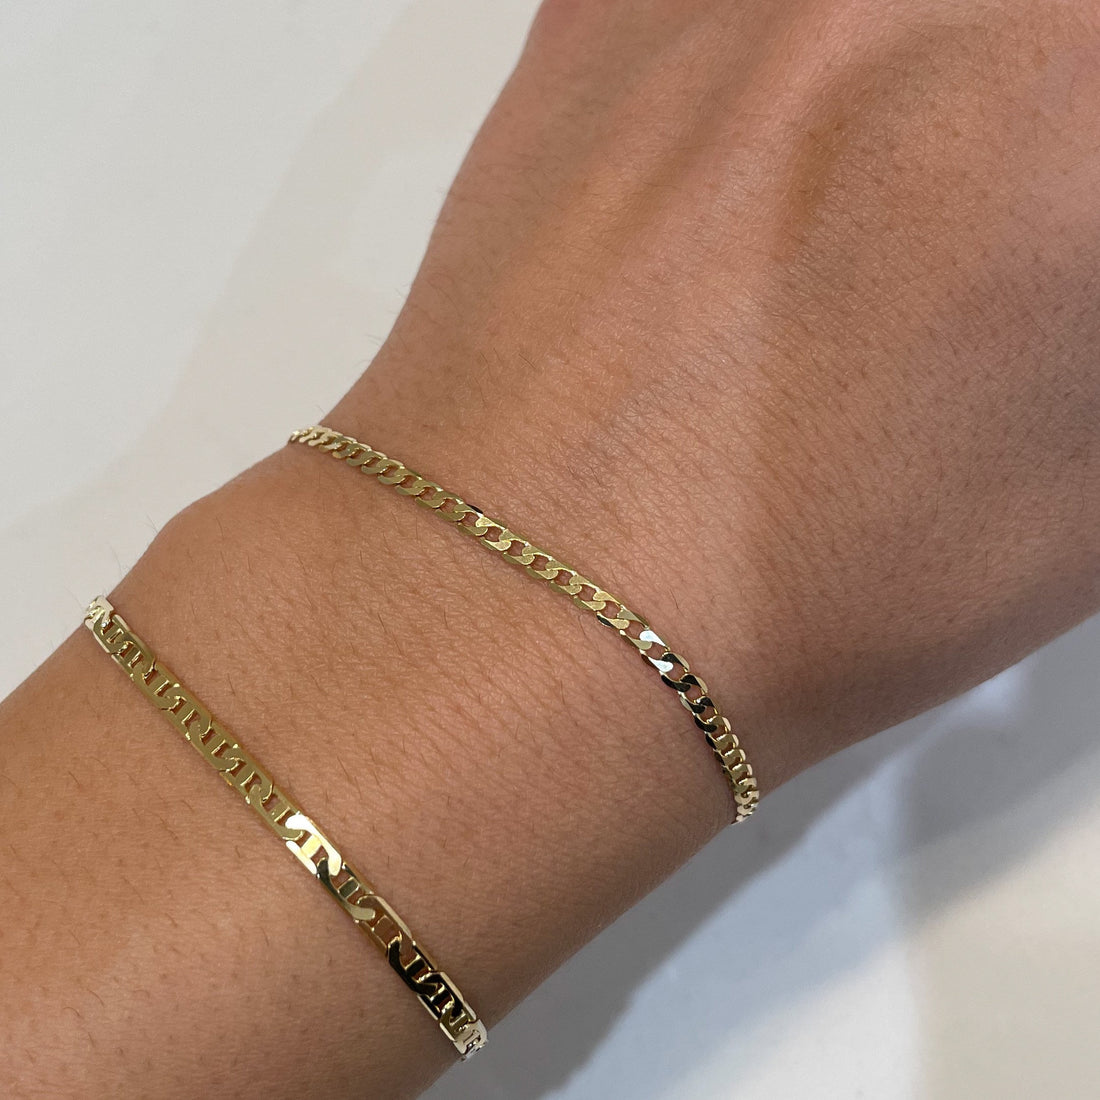 14k Gold Flat Gucci Bracelet, 14k Solid Gold Bracelet, Italian Gold Bracelet, Chain and Link Bracelet, Bracelet, Chain Bracelet, Holiday